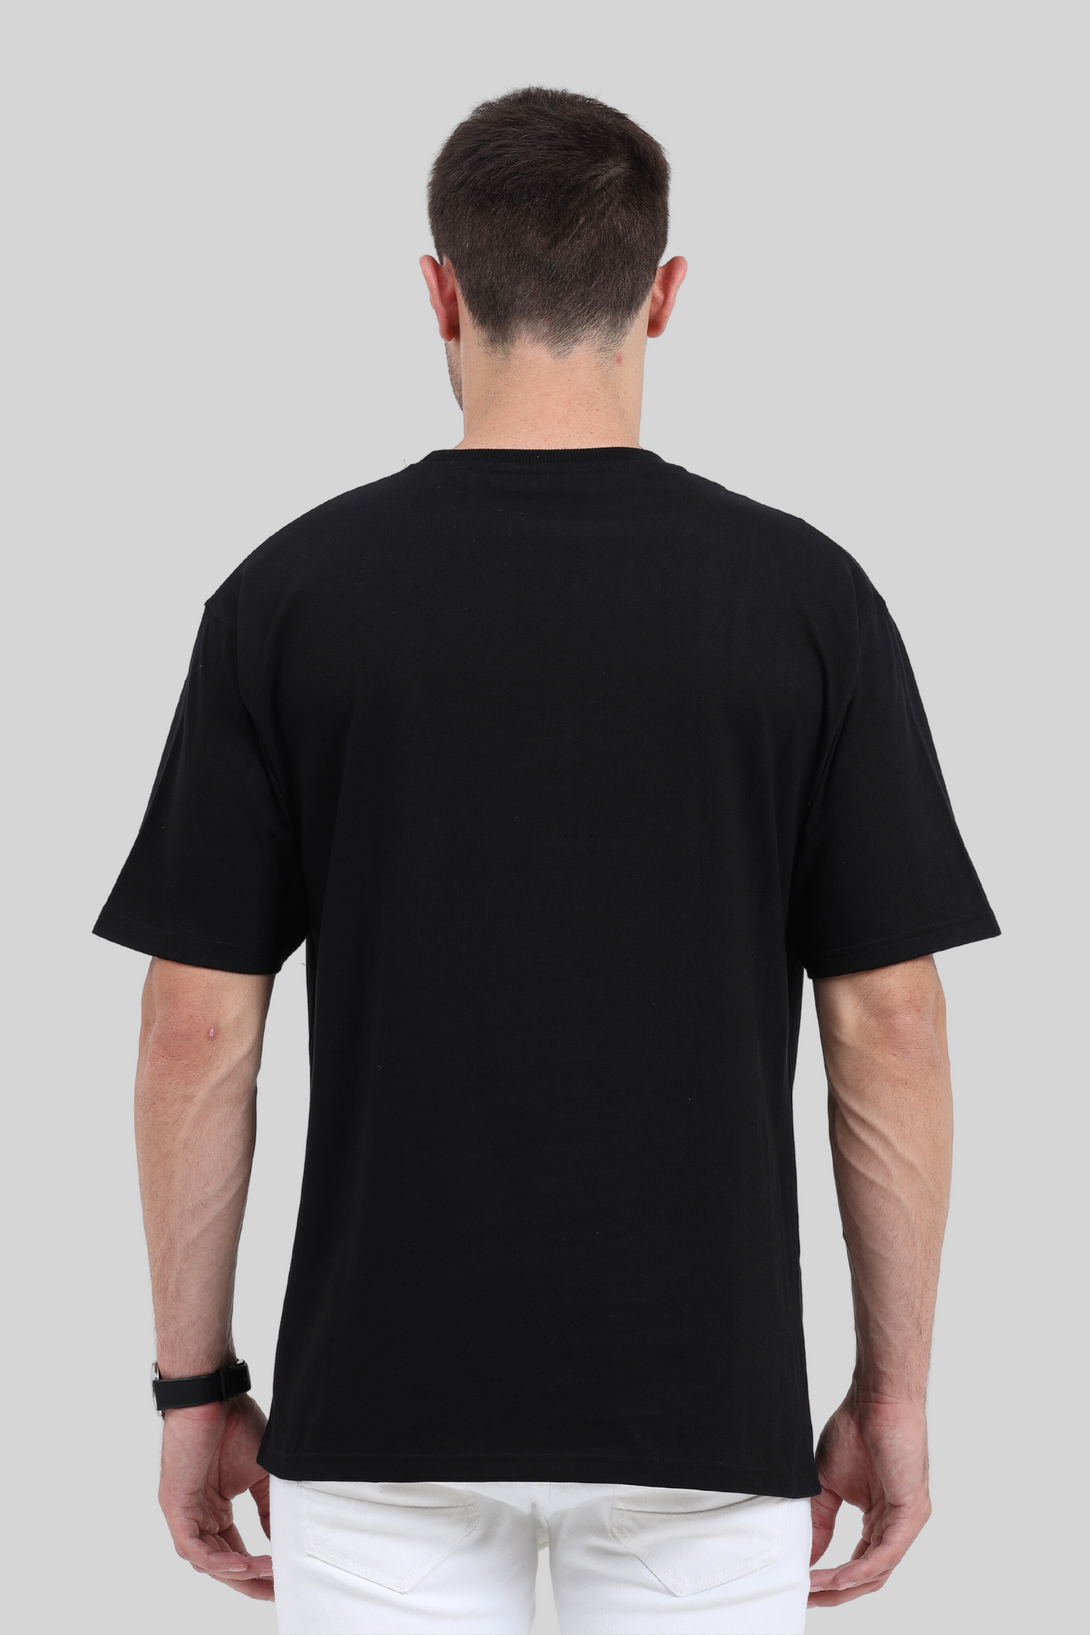 Black Oversized T-Shirt For Men - WowWaves - 1